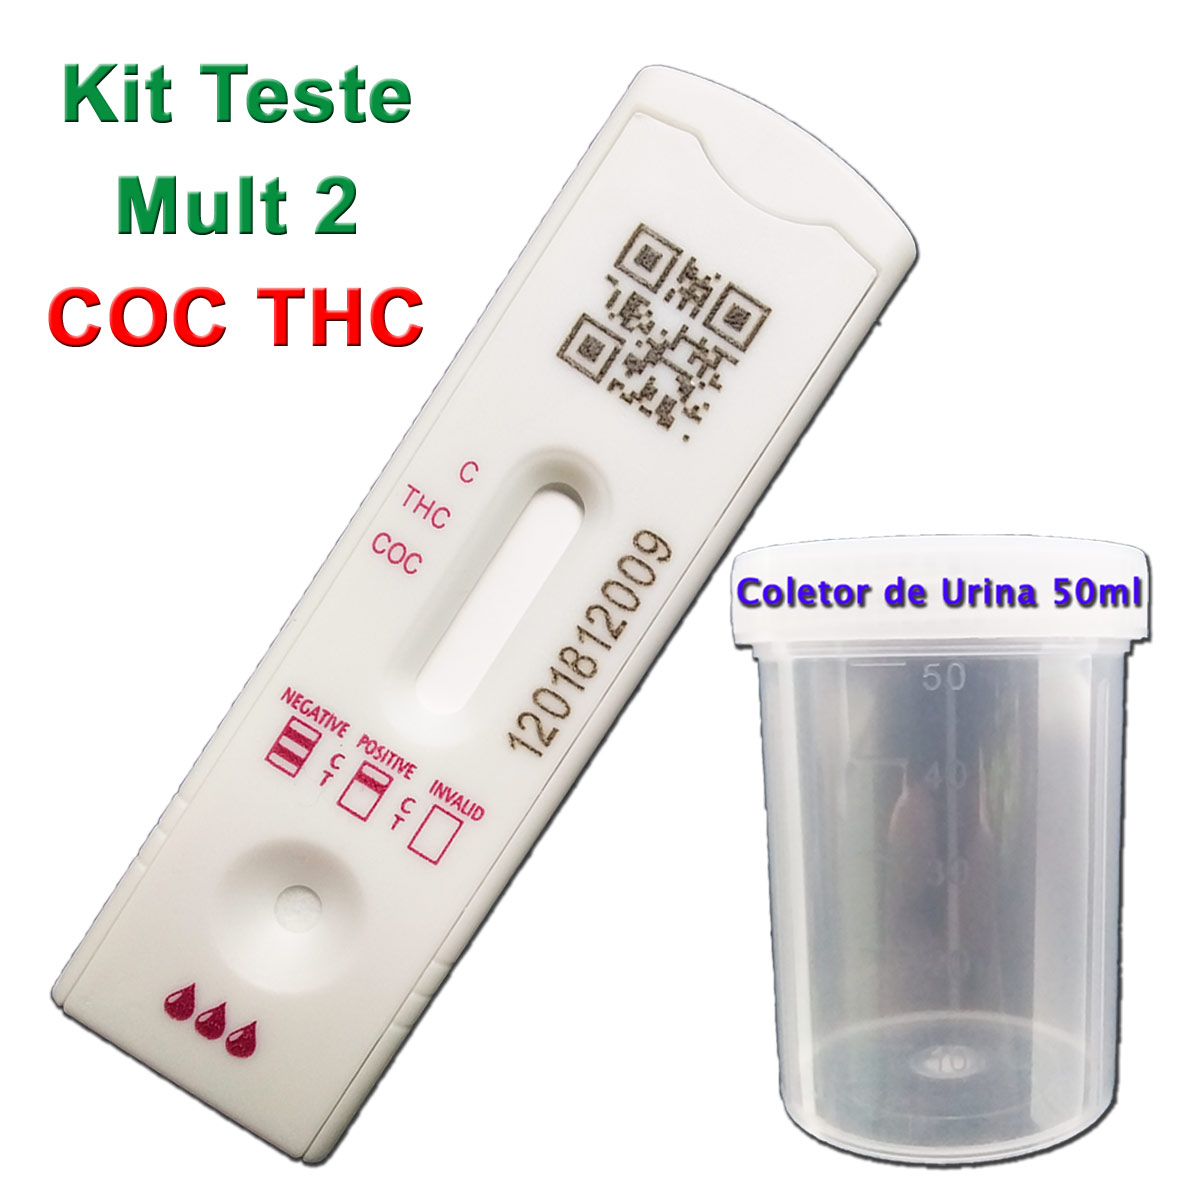 10 Kits para teste de duas substâncias - COC+THC com coletor de urina  - Loja Saúde - Testes Para COVID-19 e Drogas, Máscaras e Suplementos